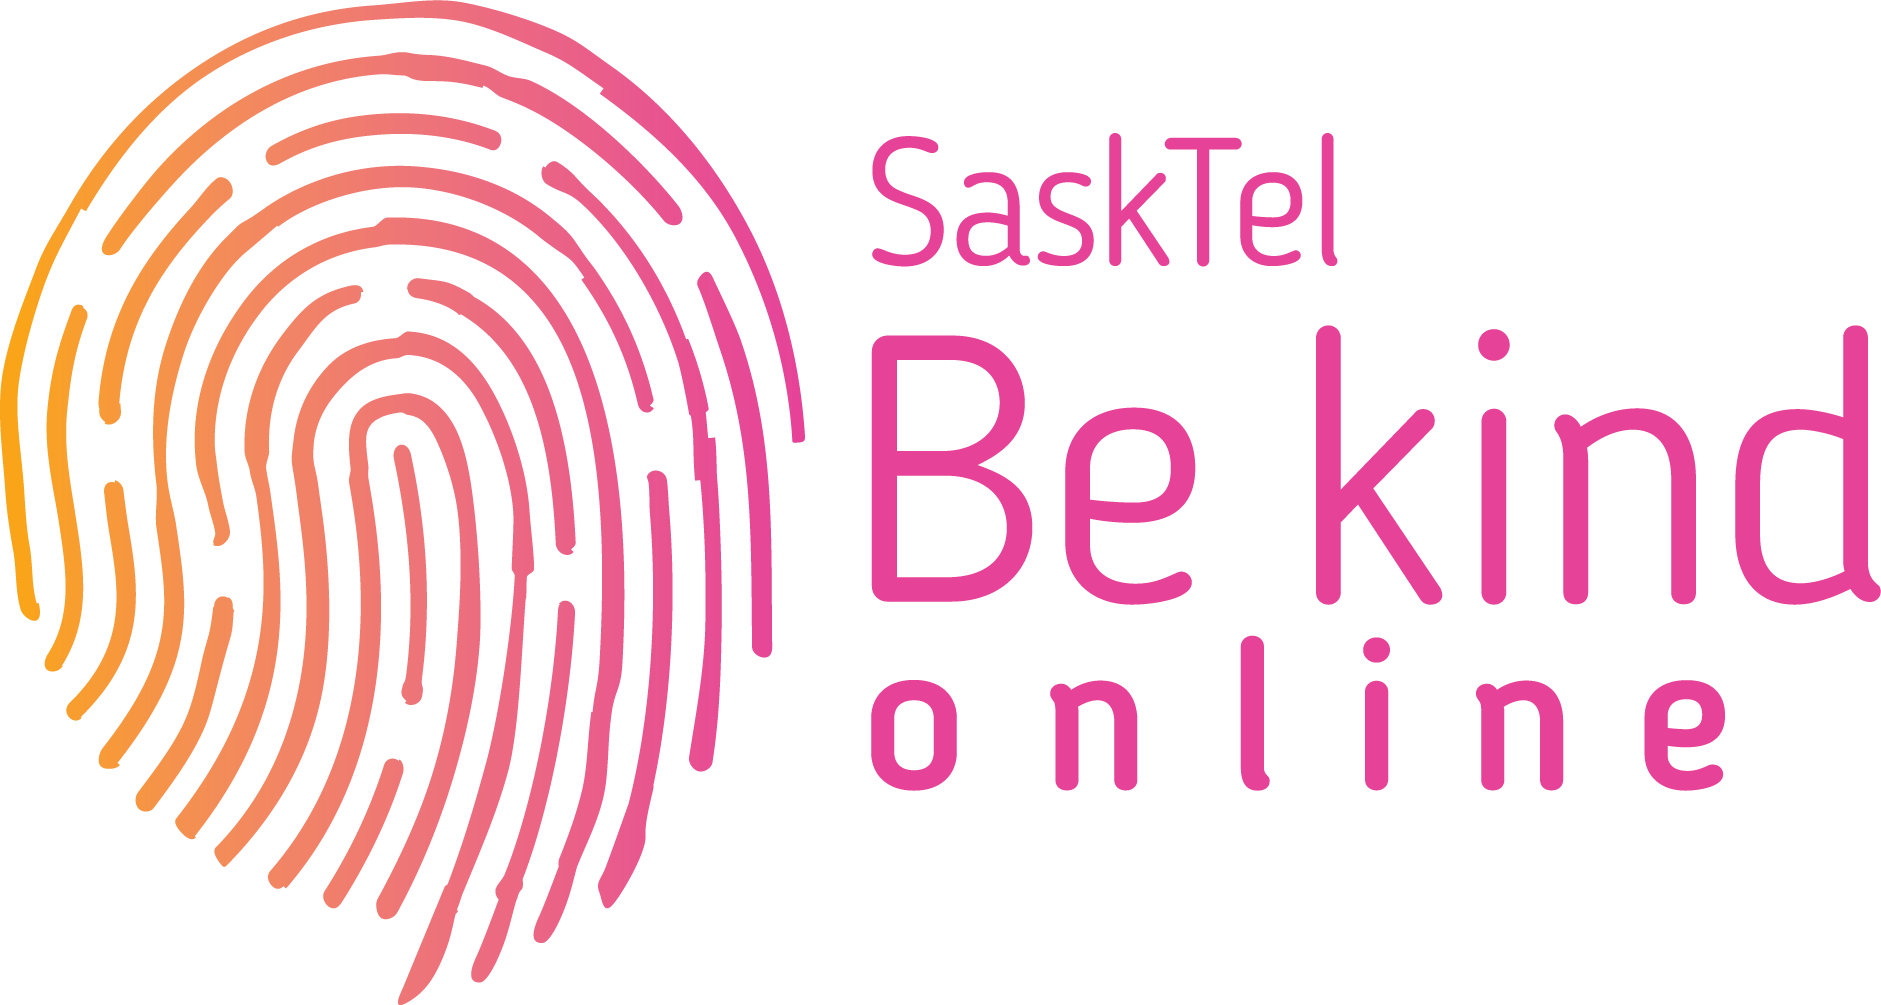 SaskTel Be Kind Online logo